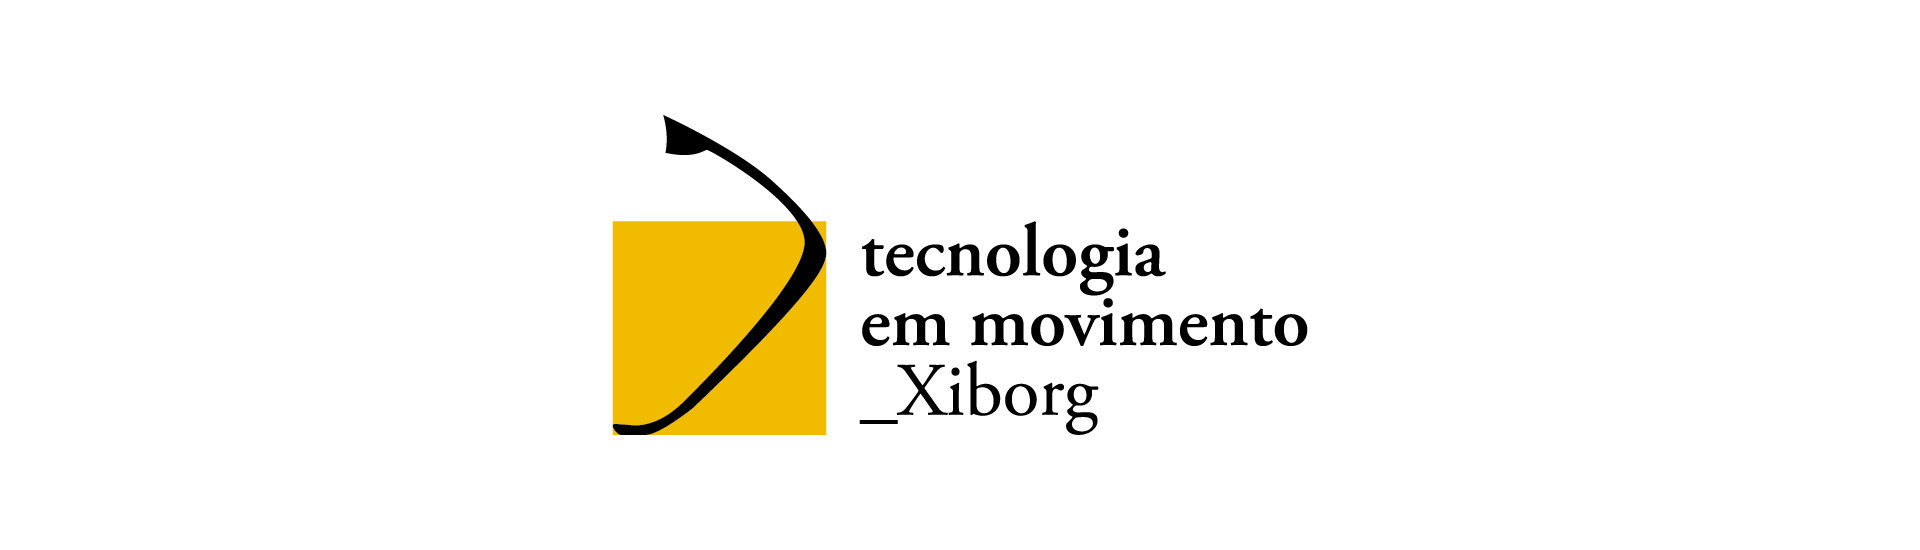 Cartaz expositivo de Tecnologia em Movimento po Xiborg